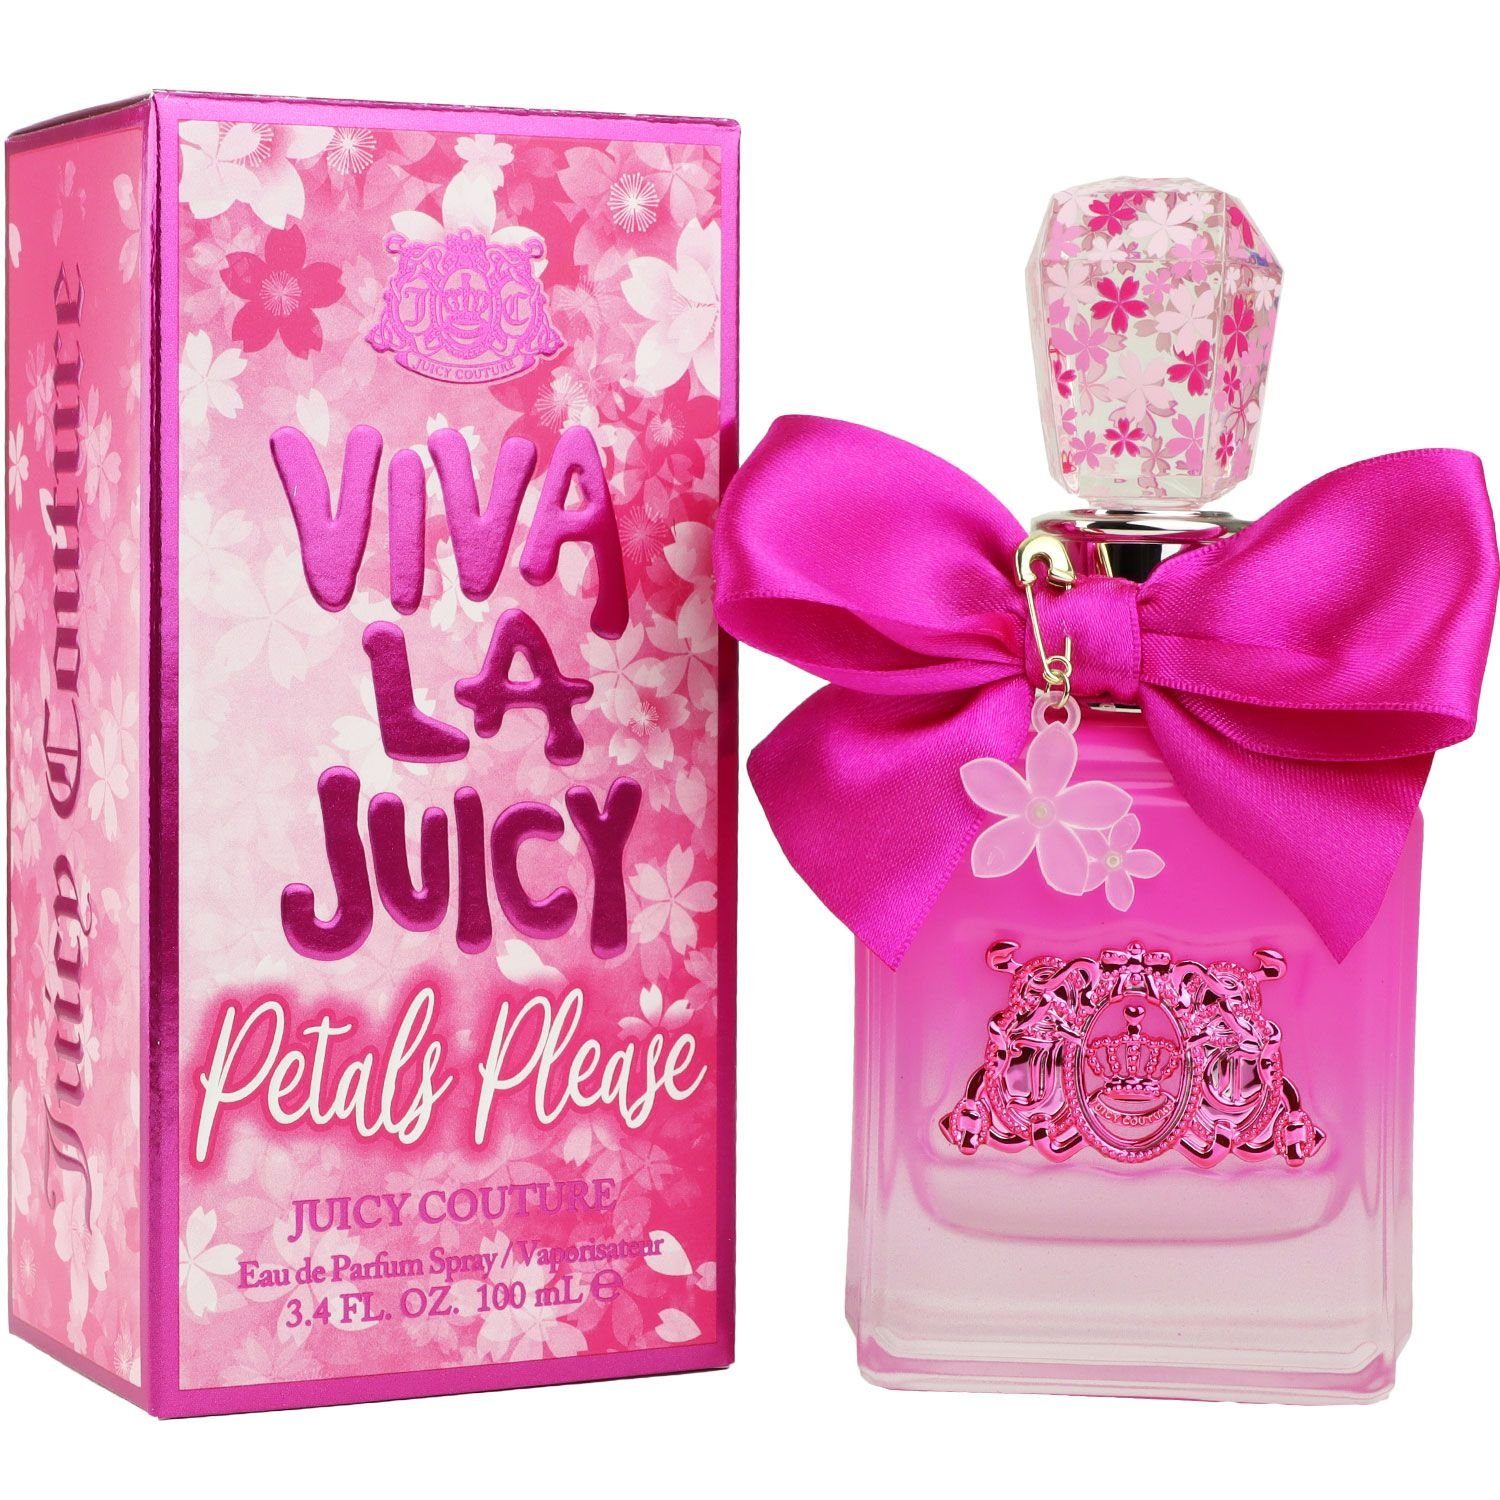 Juicy Couture Eau de Parfum Viva La Juicy Petals Please 100 ml | Eau de Toilette